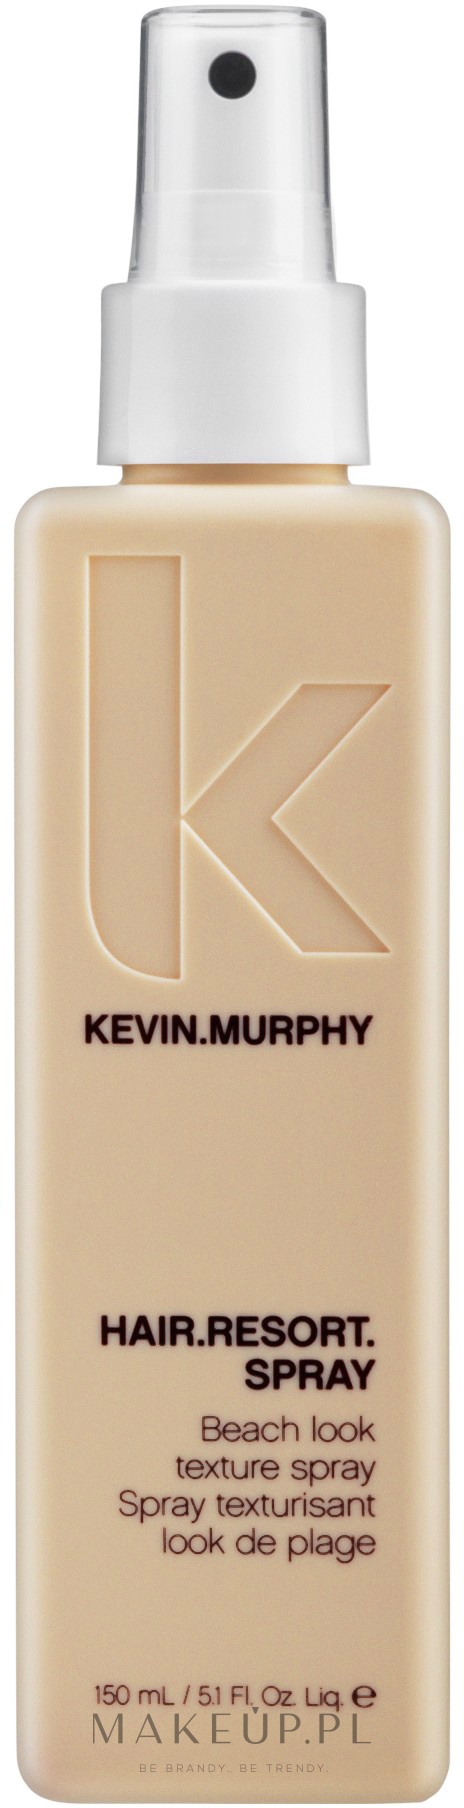 Spray do tworzenia efektu plażowej fryzury - Kevin.Murphy Hair.Resort.Spray — Zdjęcie 150 ml